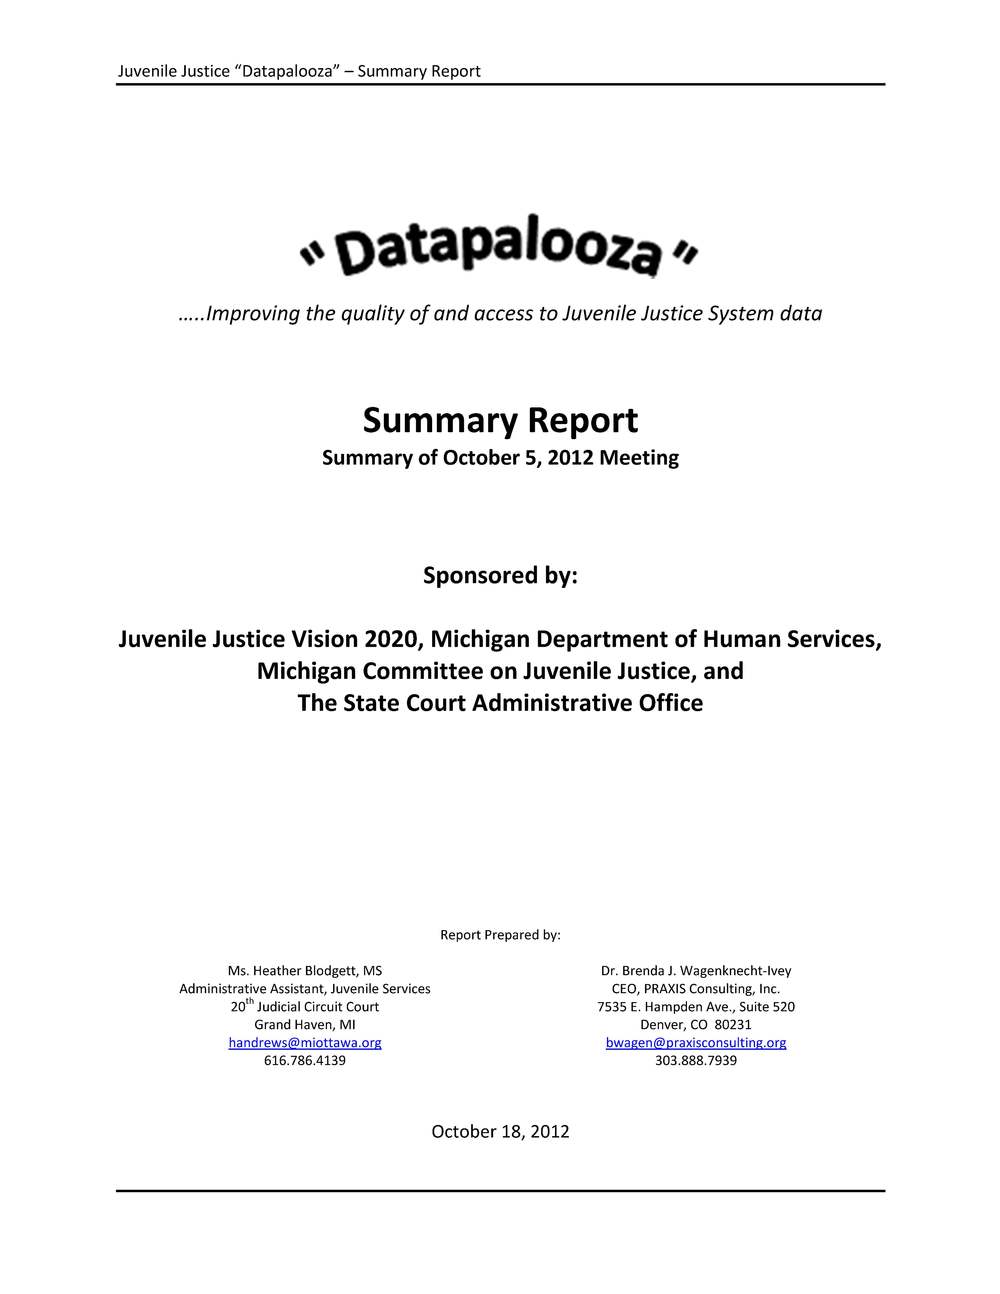 Datapalooza Report